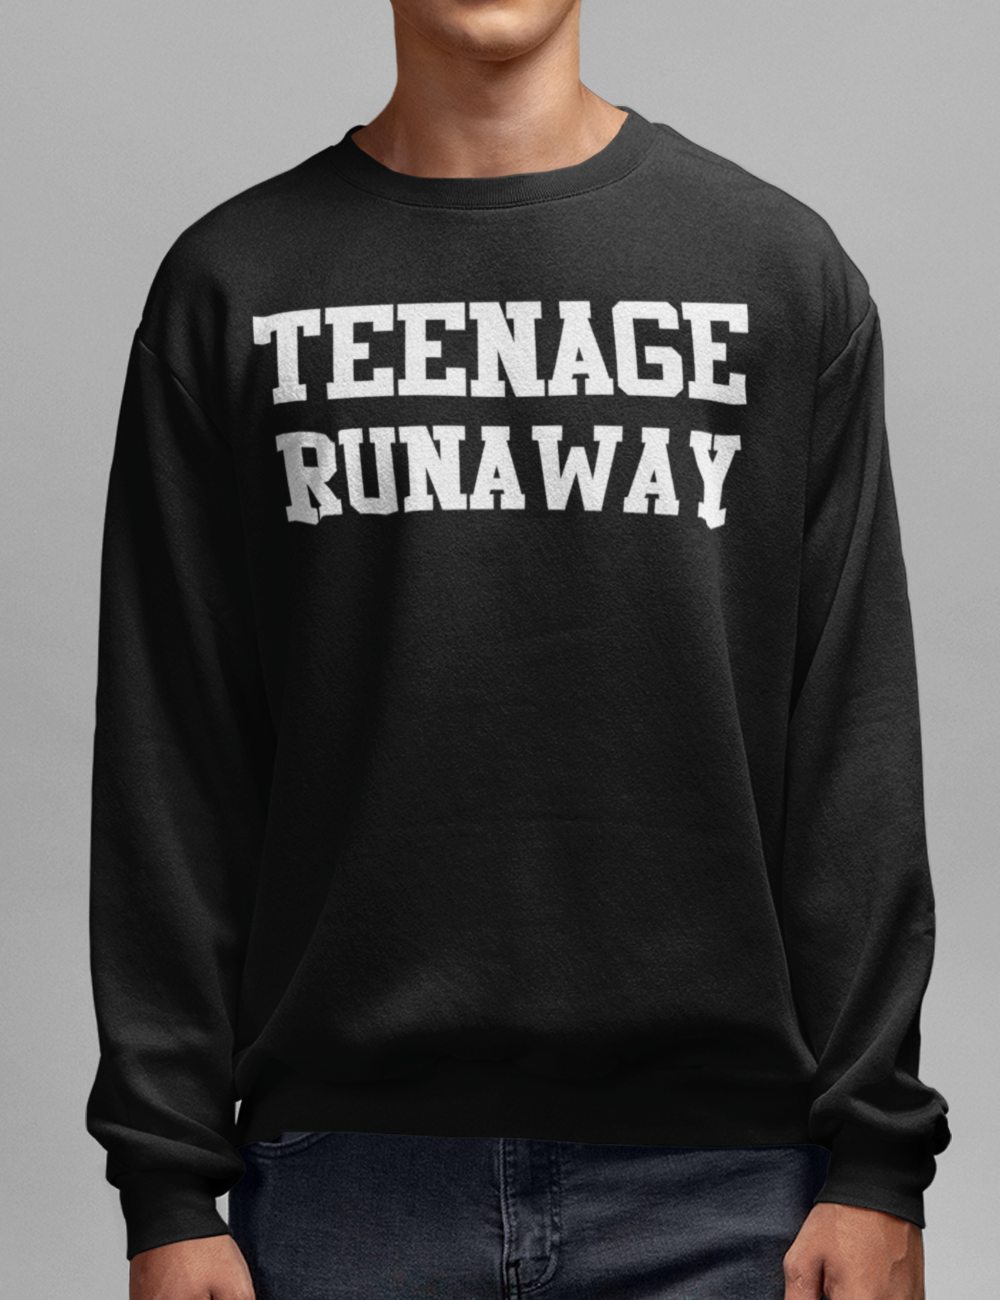 Teenage Runaway | Crewneck Sweatshirt OniTakai